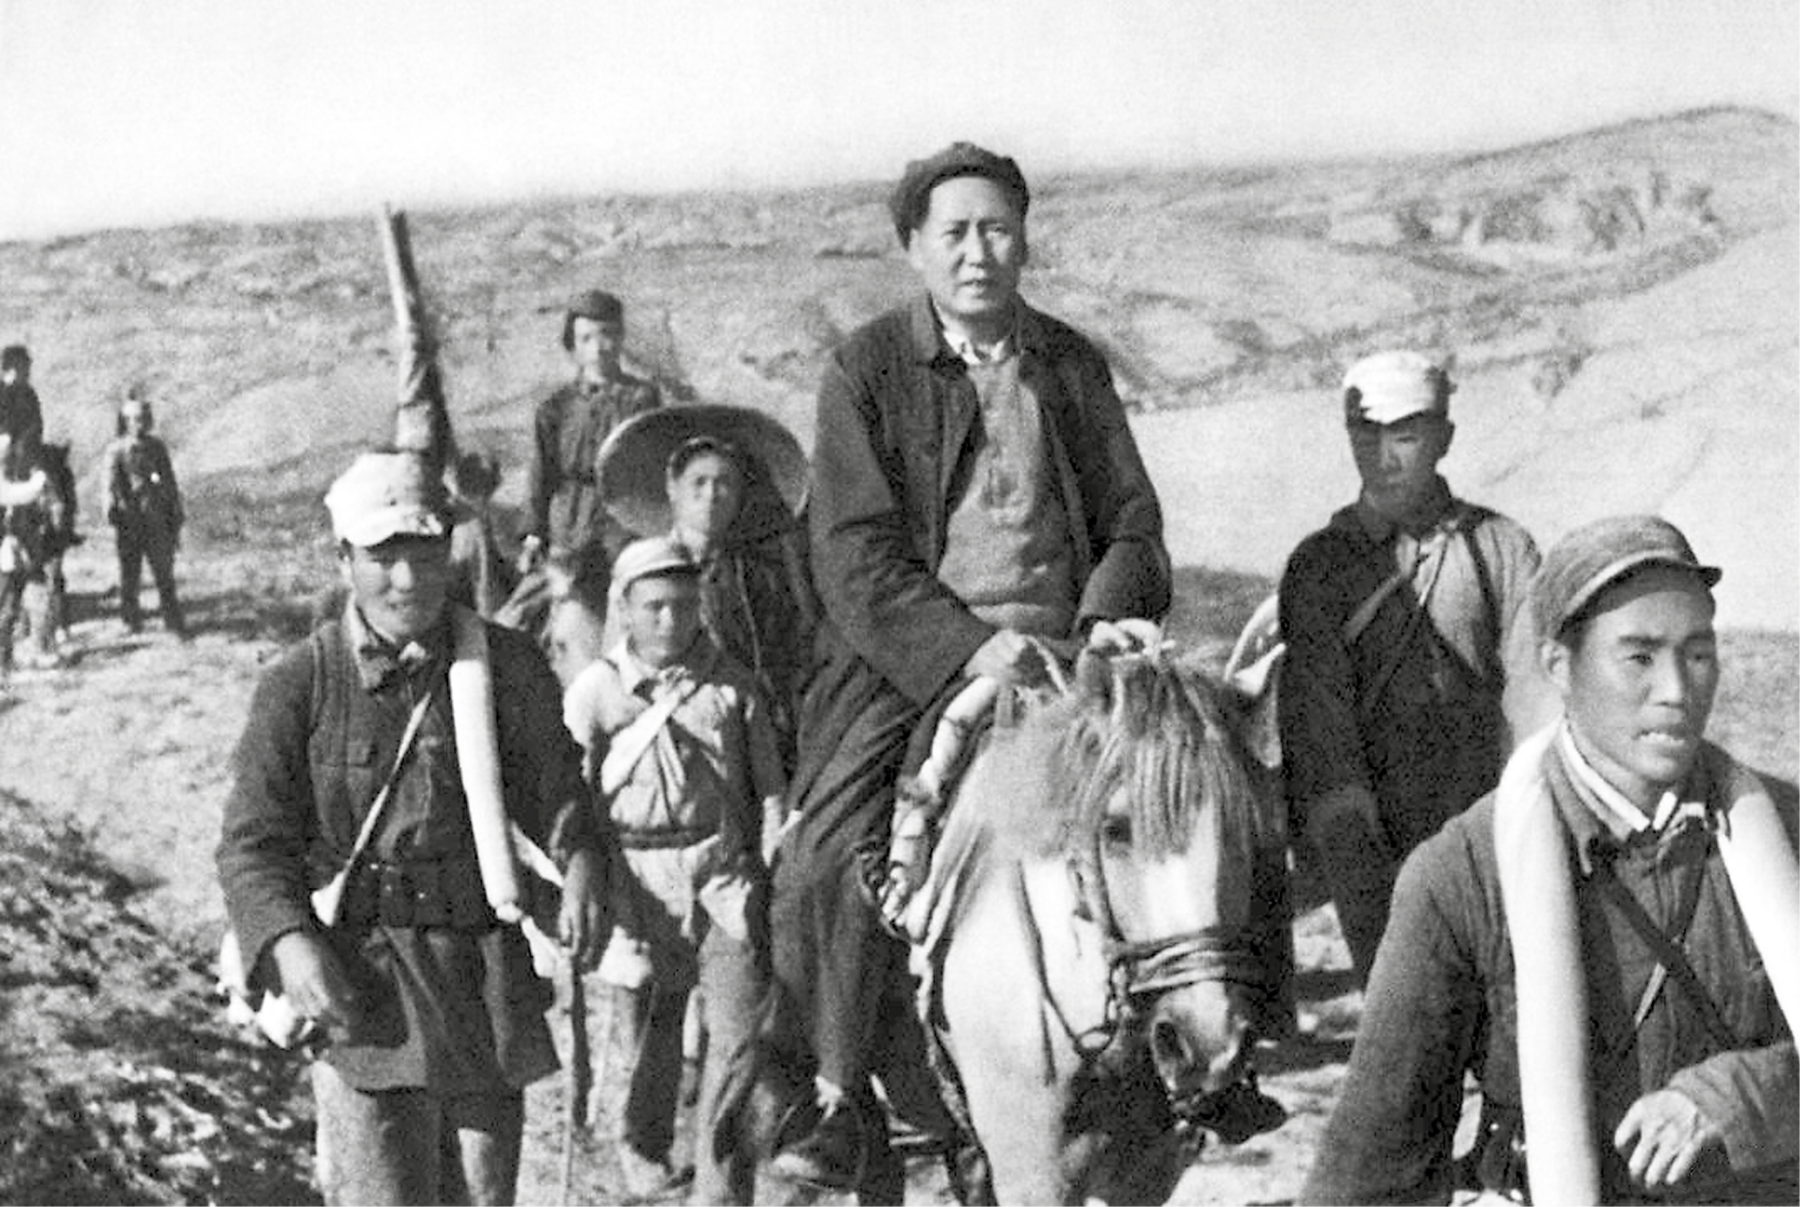 Fotografia em preto e branco. Mao Tsé-tung, homem de casaco e boina montado em um cavalo. Ao redor dele, pessoas caminham.